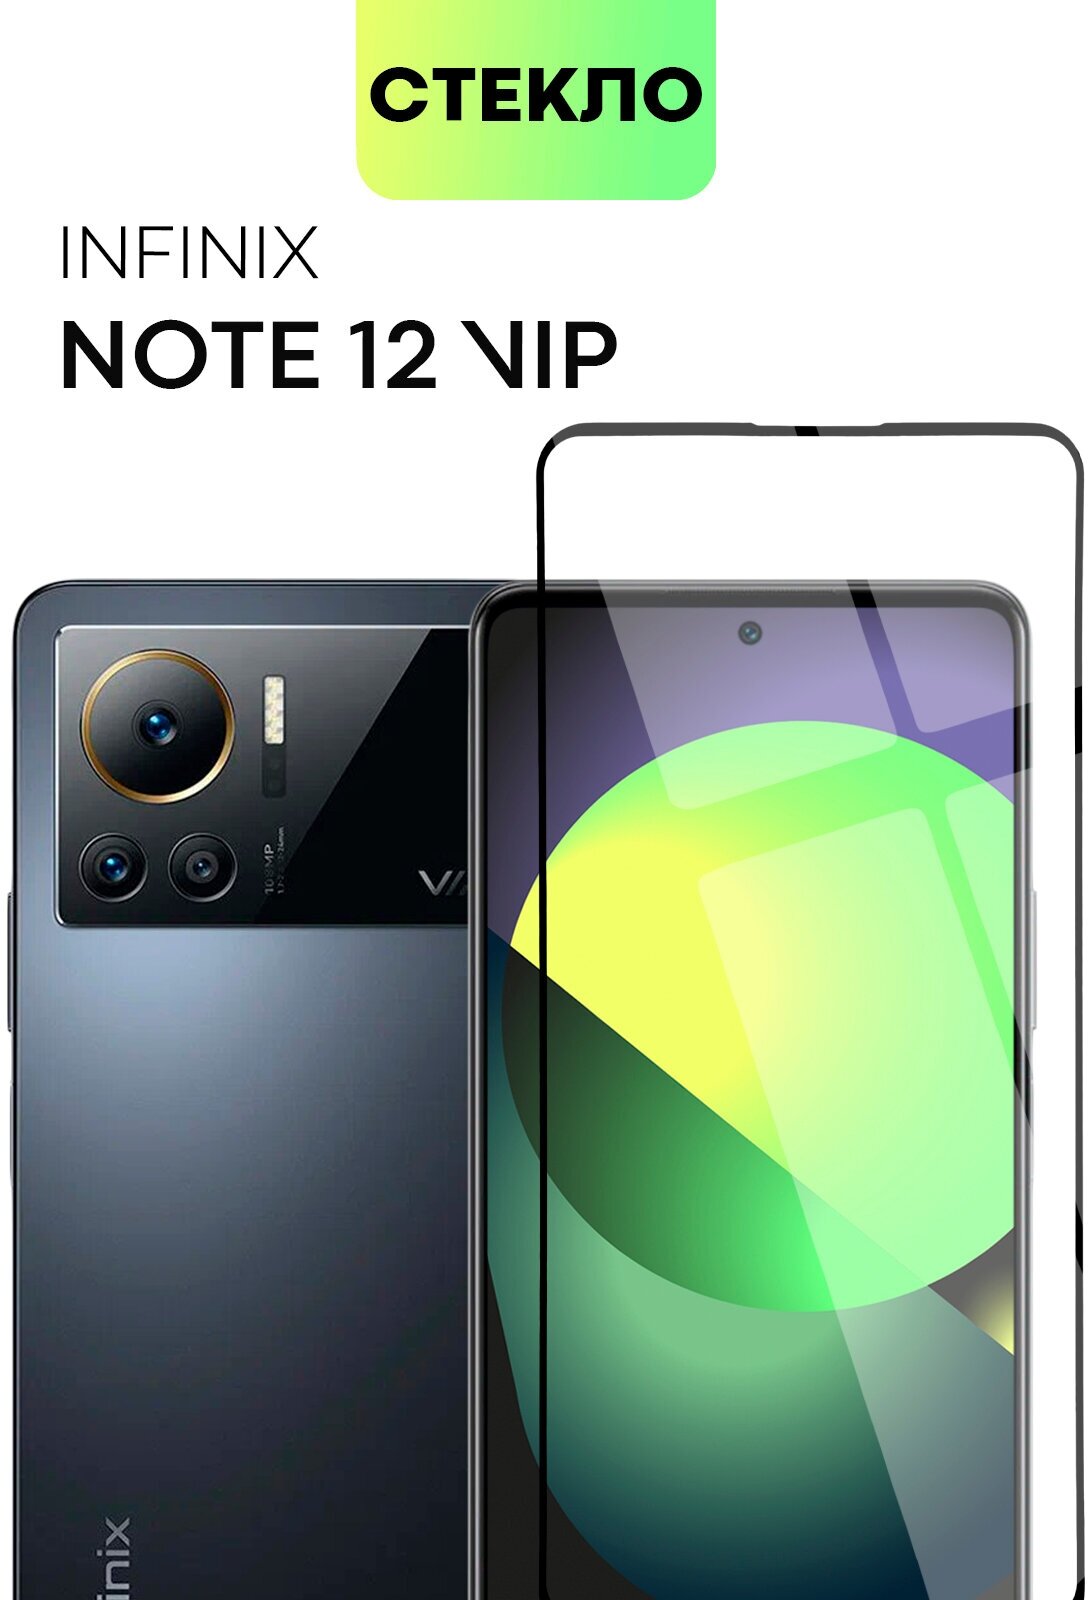 Защитное стекло для Infinix Note 12 Vip (Инфиникс Ноут 12 Вип) олеофобное покрытие, прозрачное, закалённое стекло, BROSCORP, с рамкой